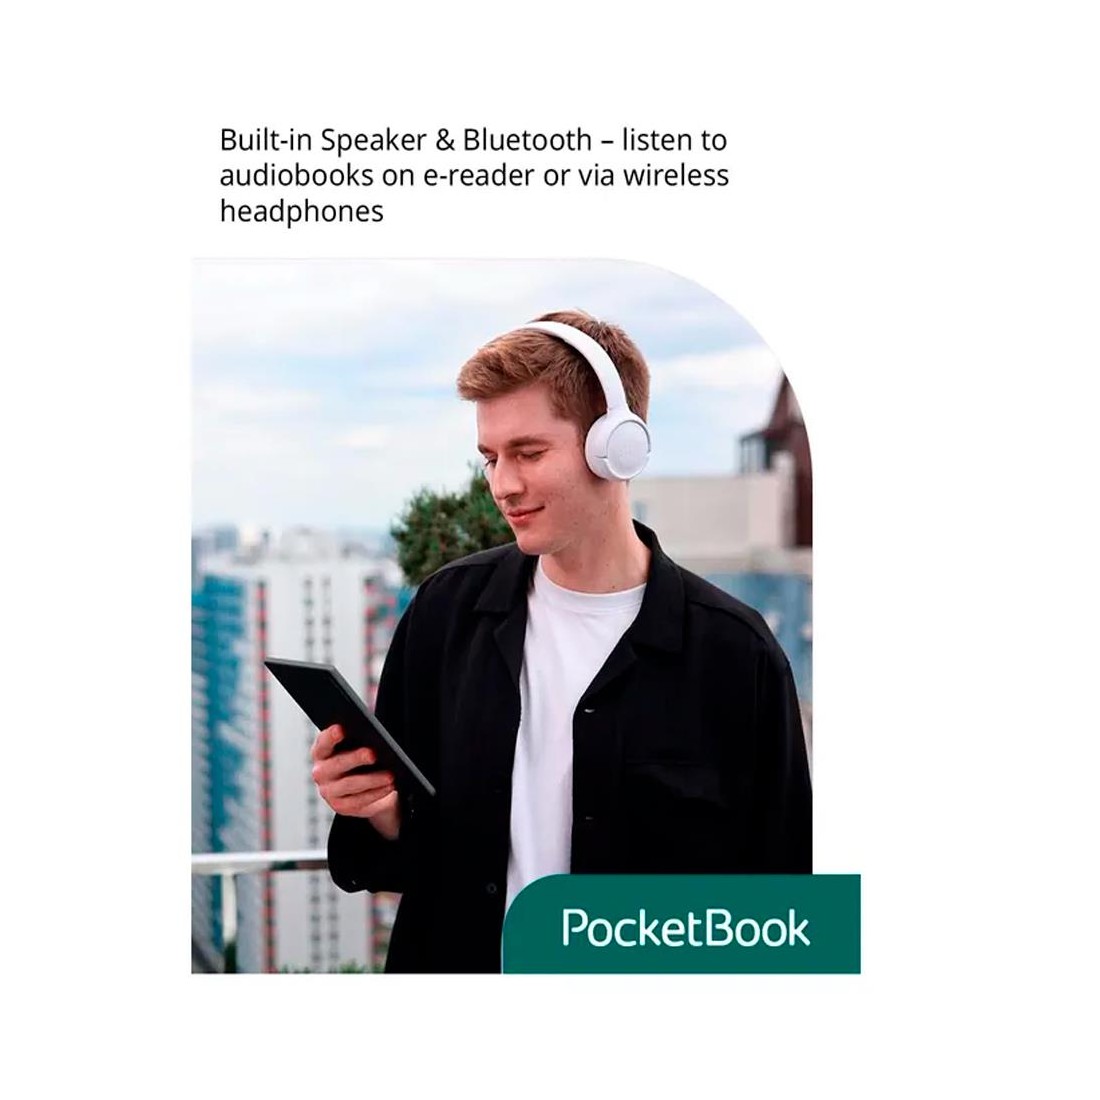 PocketBook InkPad Color 3: pantalla a color de última generación